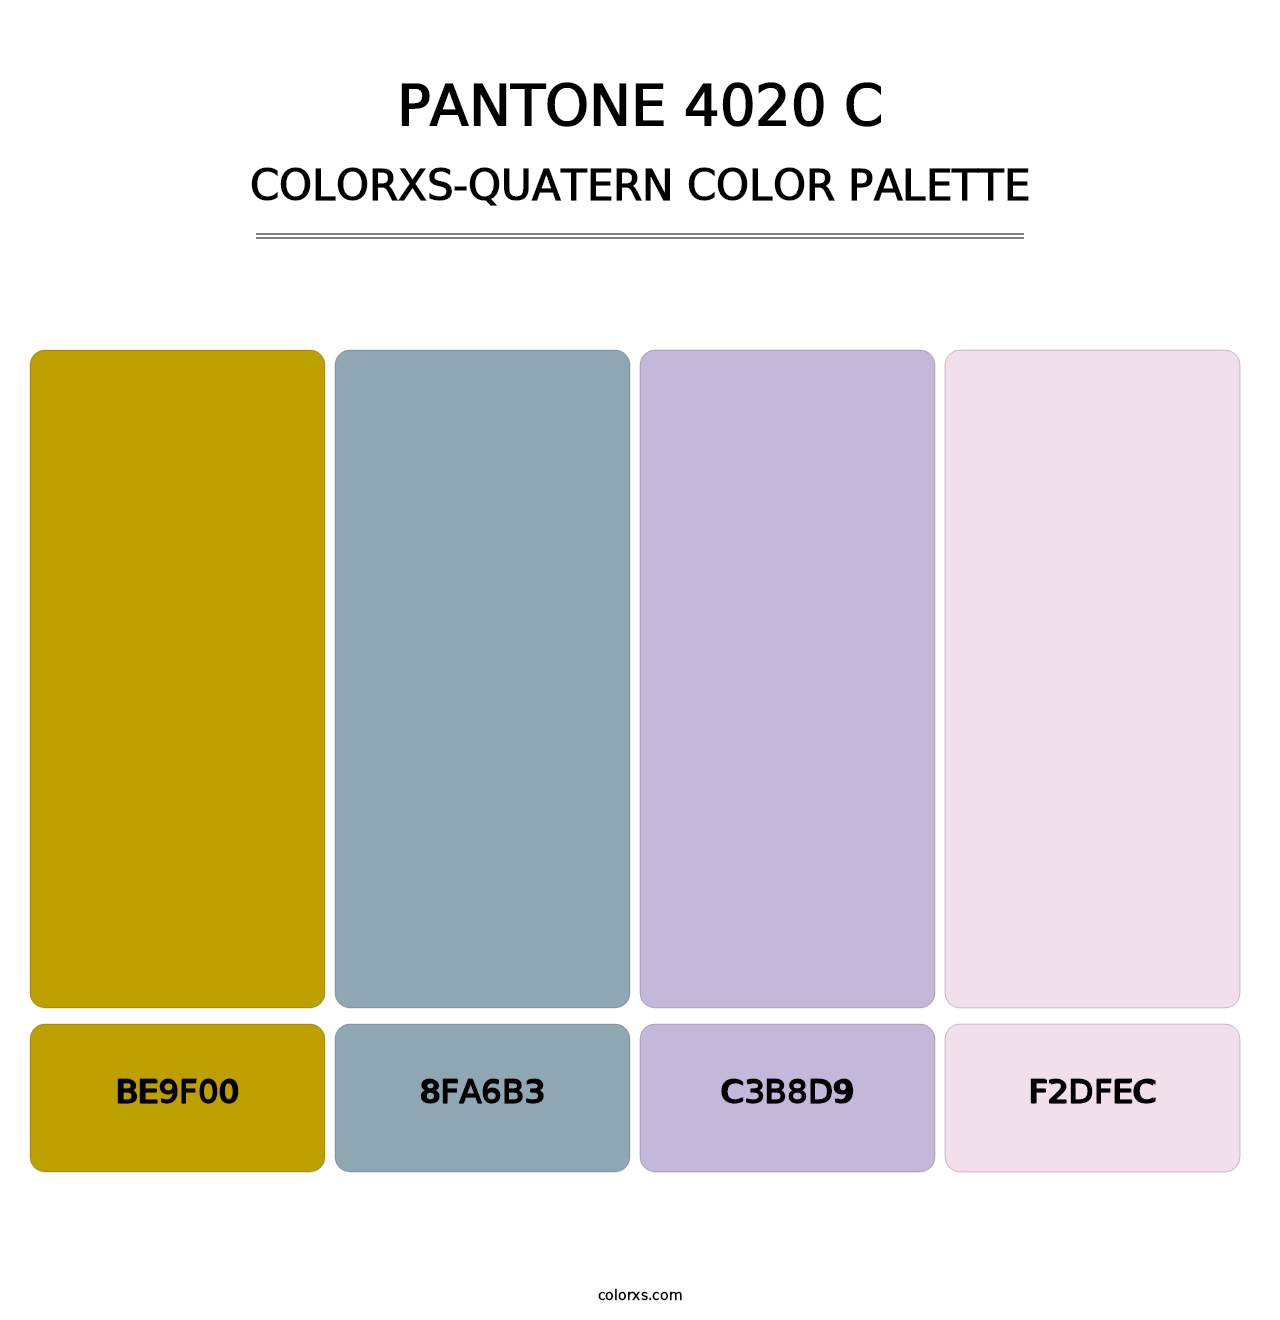 PANTONE 4020 C - Colorxs Quatern Palette